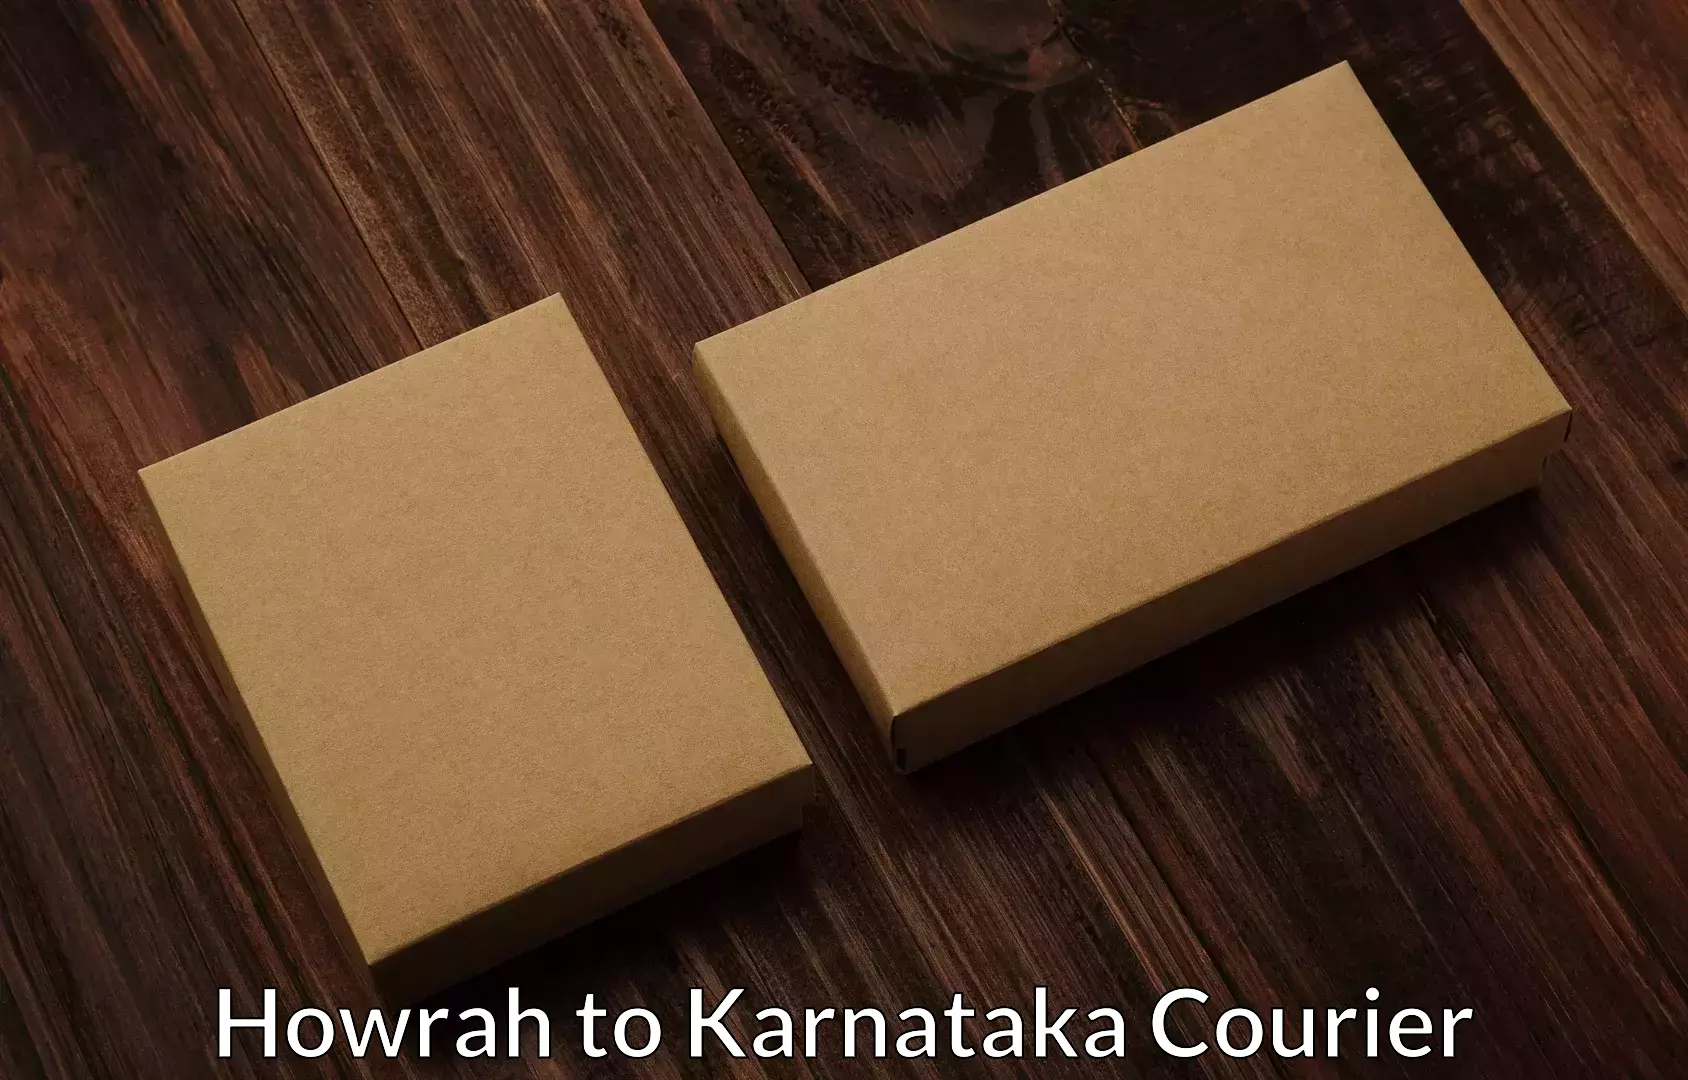 Full-service household moving Howrah to Karnataka